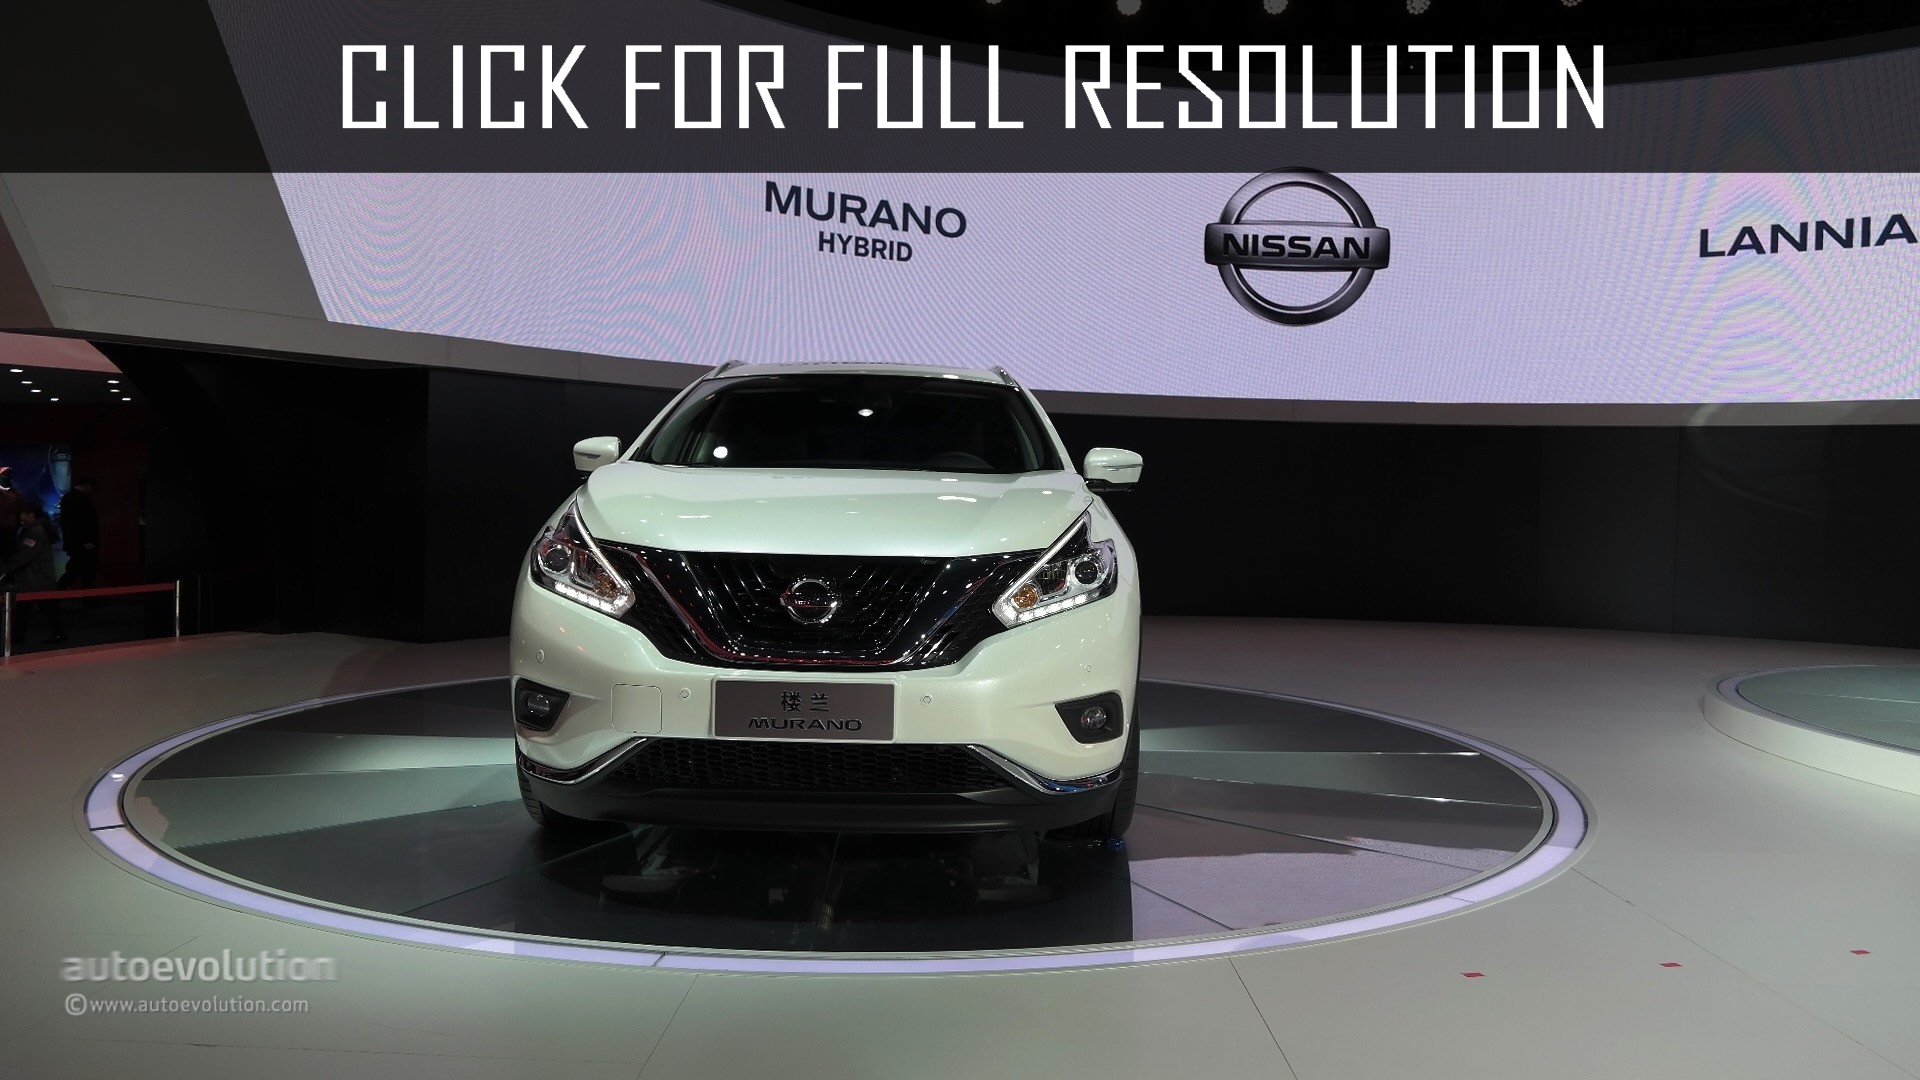 Nissan Murano Hybrid 2015